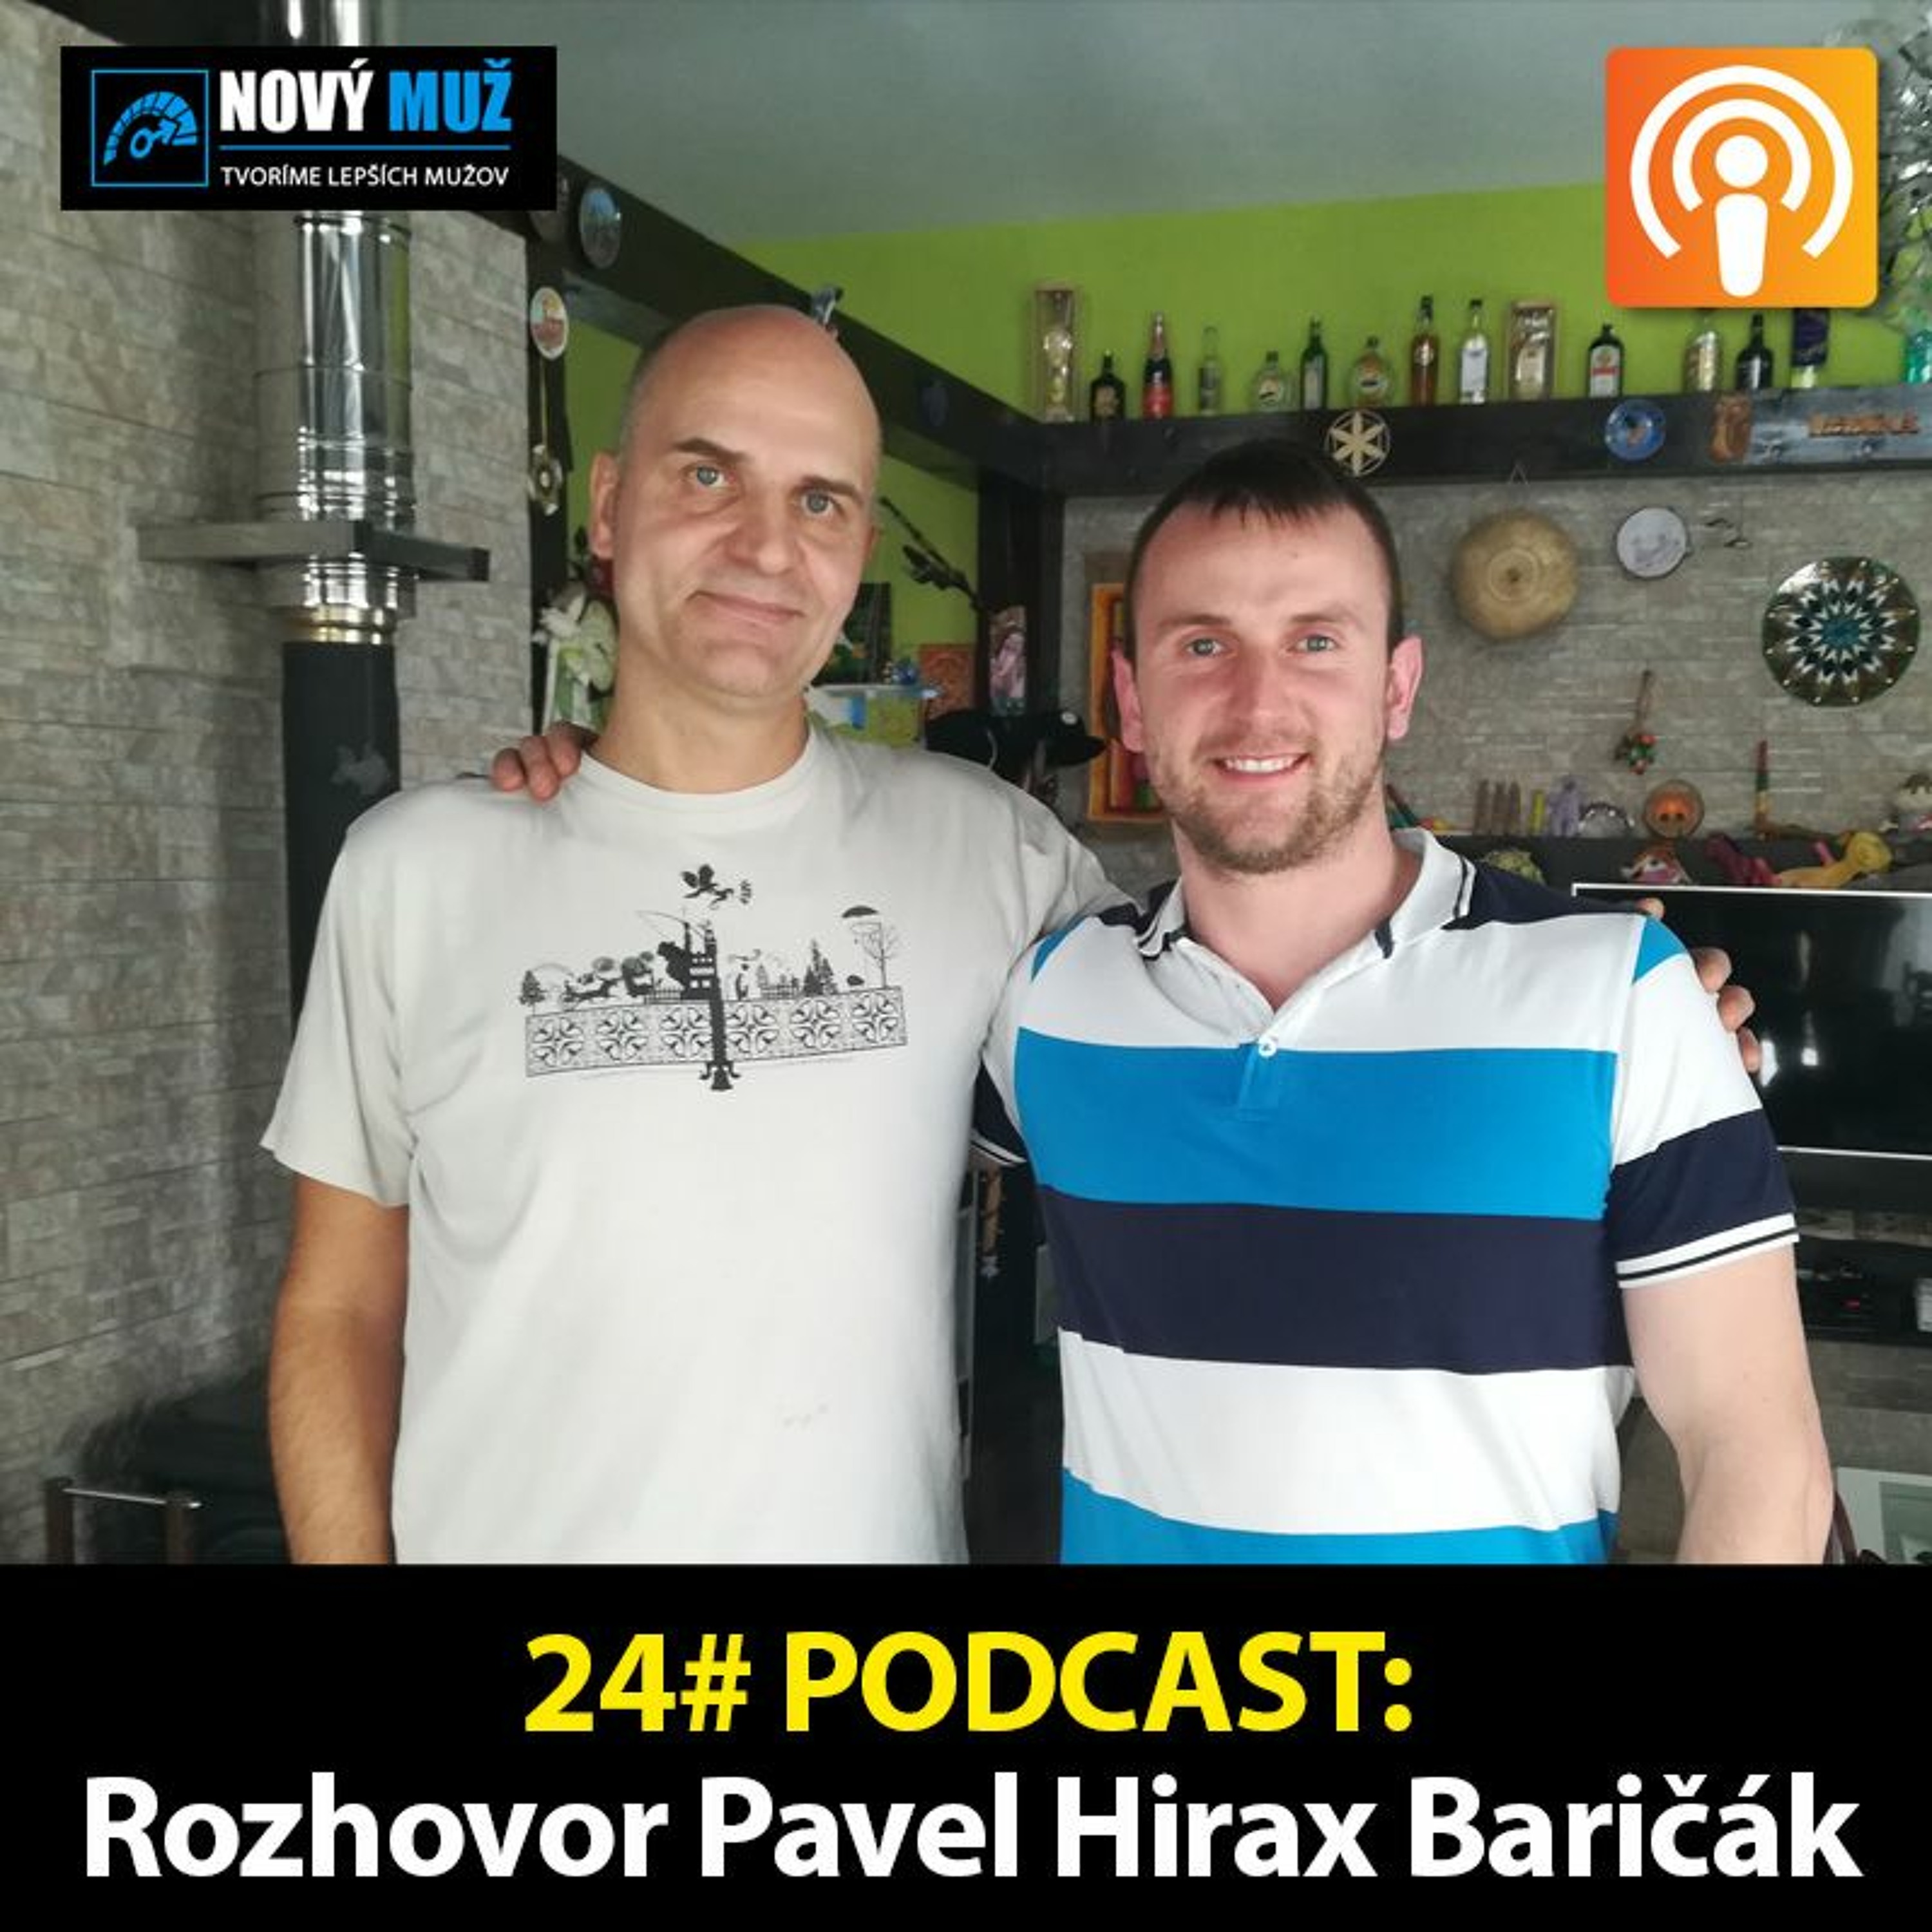 24# PODCAST - Rozhovor Pavel Hirax Baričák - Prečo si k sebe priťahujeme nevhodných partnerov